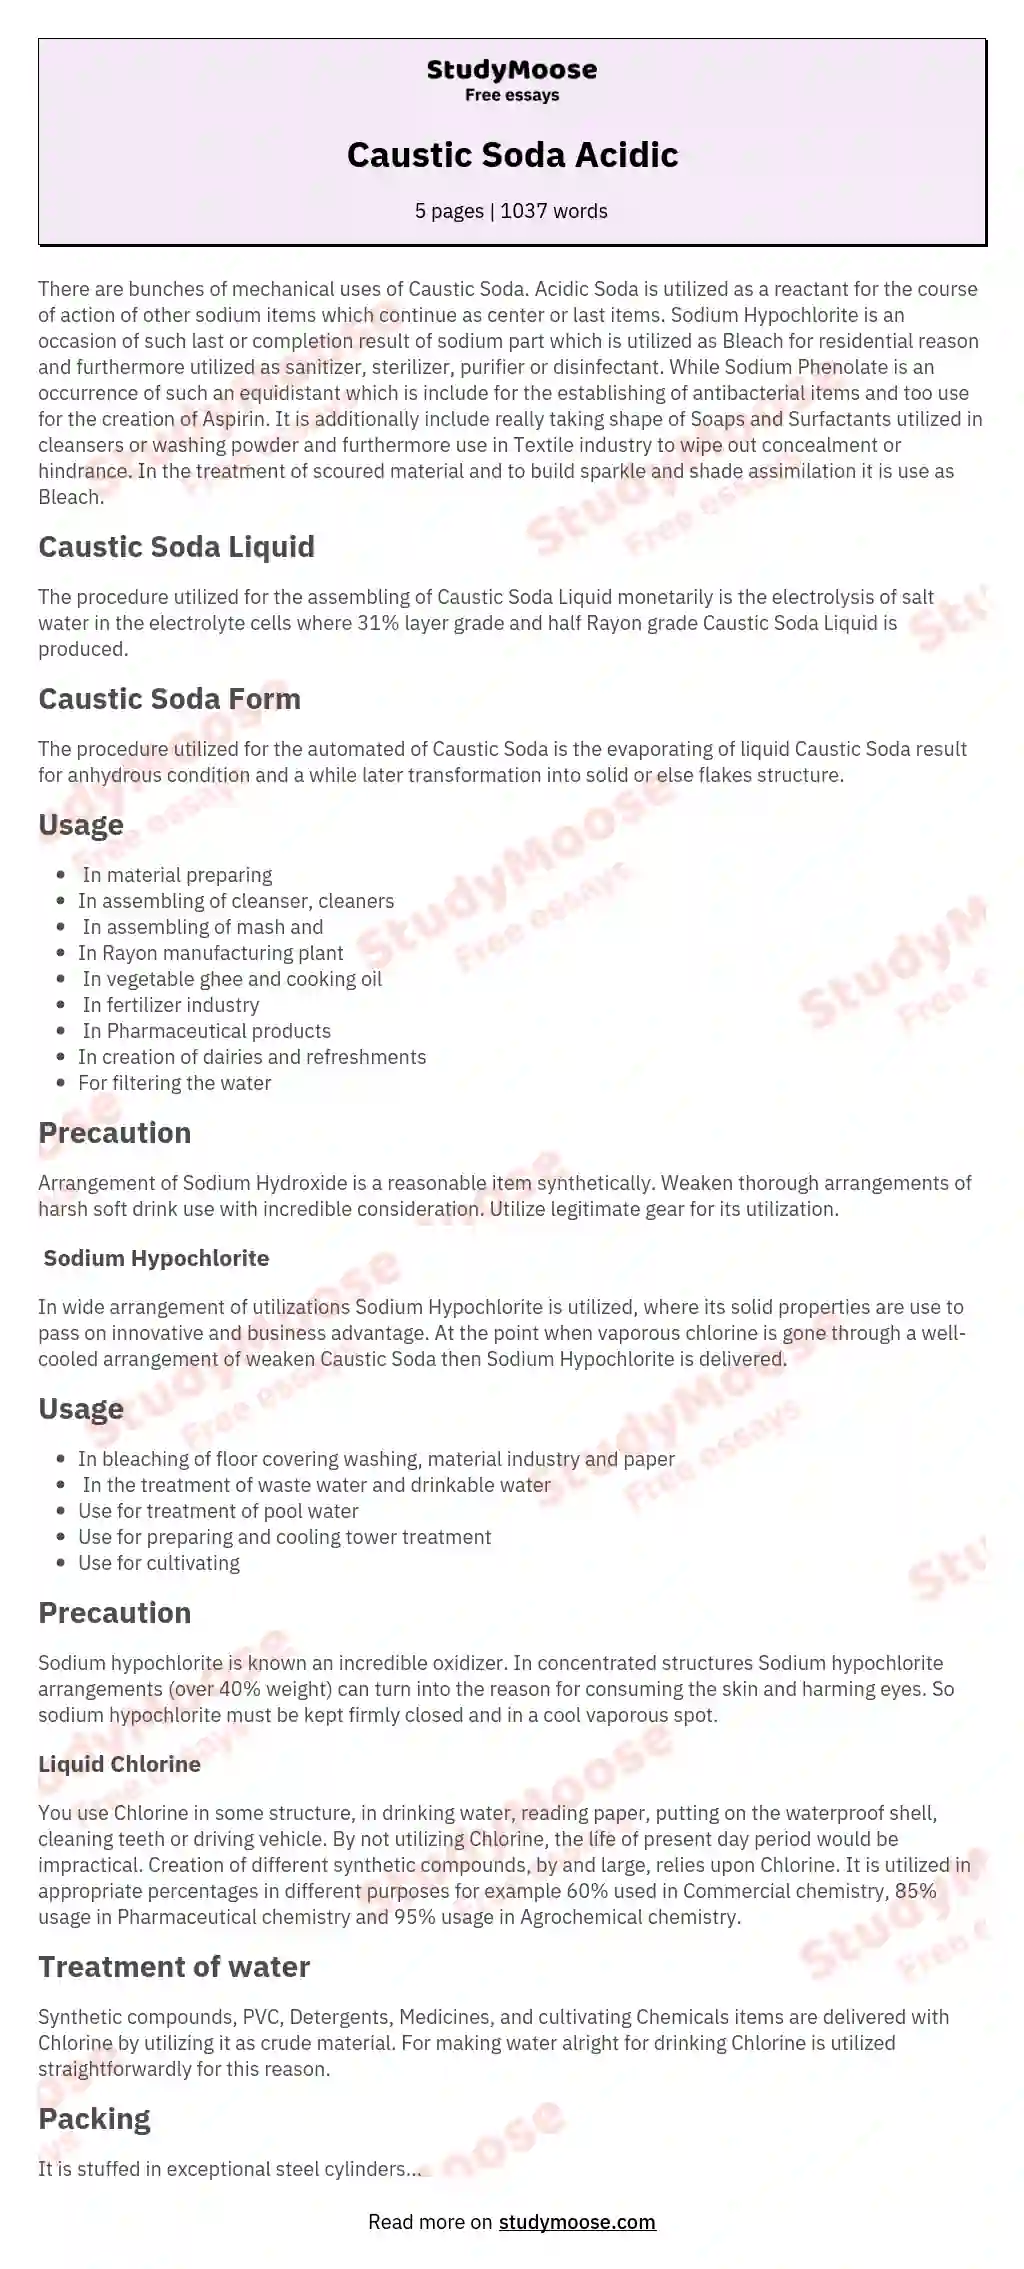 Caustic Soda Acidic essay